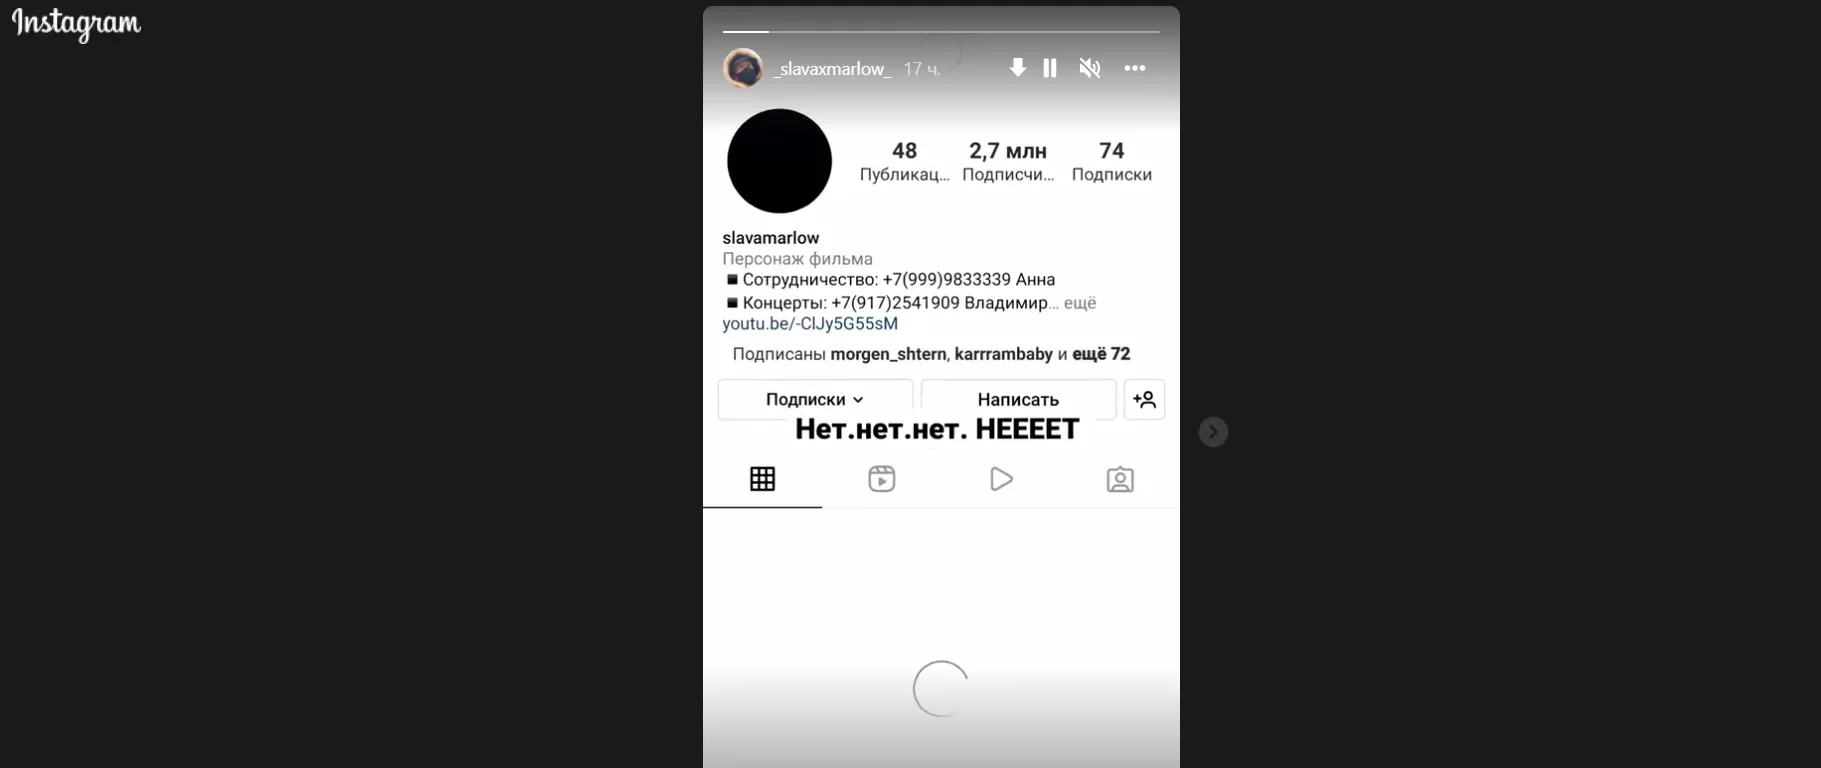 Аккаунт Сергея Лазарева исчез из Instagram после антивоенного высказывания - фото 2